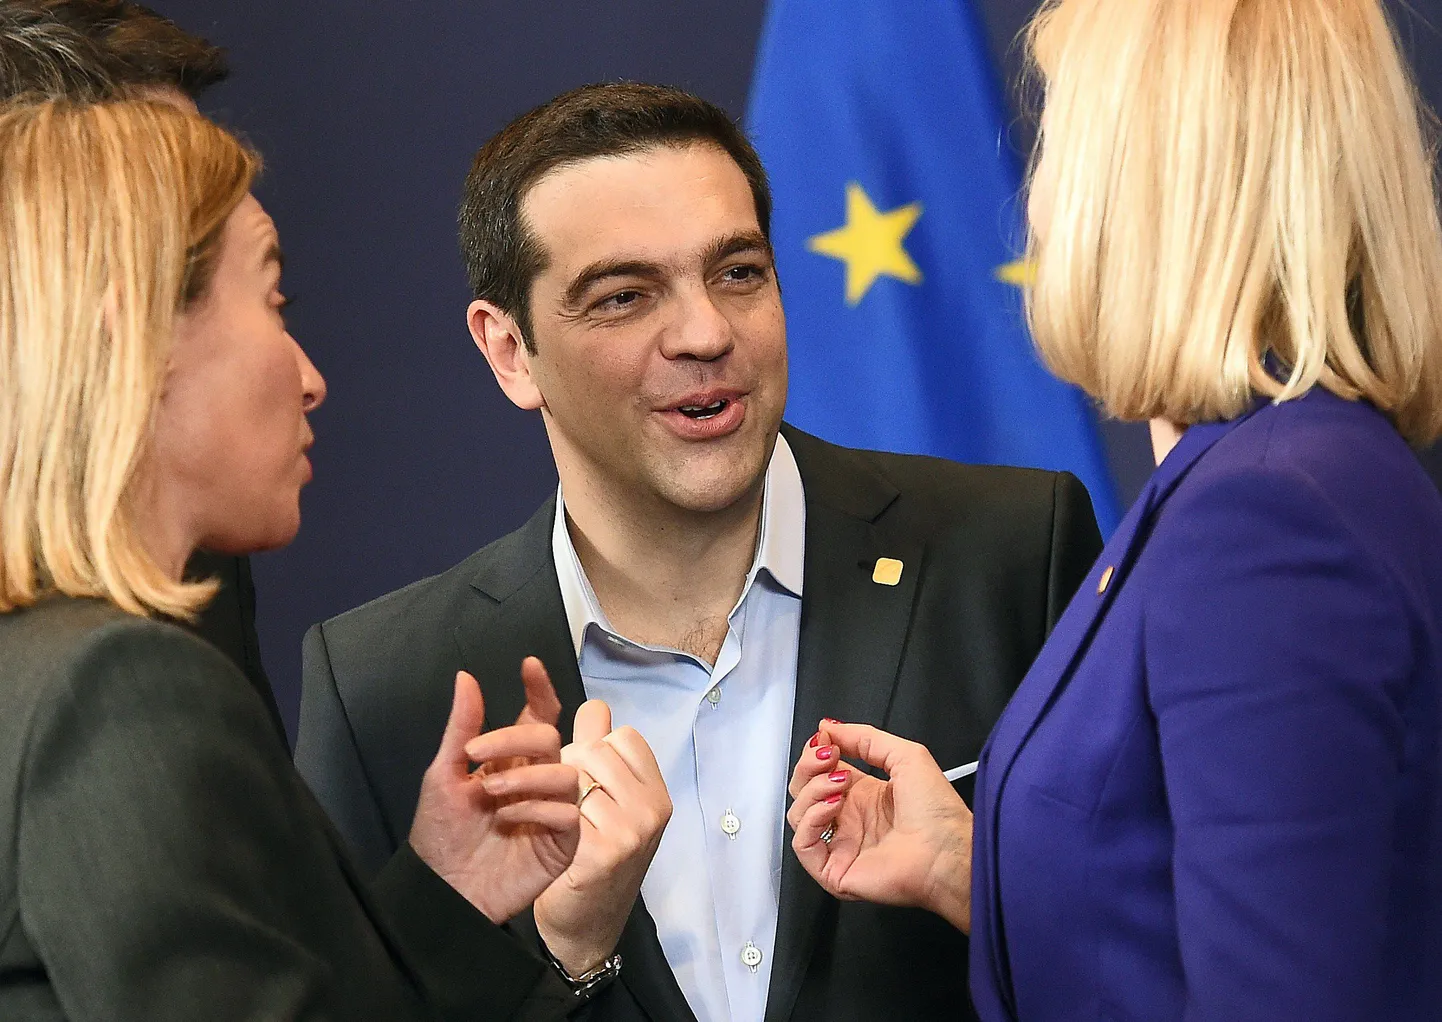 Kreeka peaminister Alexis Tsipras (keskel) räägib Euroopa välispoliitikajuhi Federica Mogherini (vaskul) ja Taani peaministri Helle Thorning-Schmidtiga.